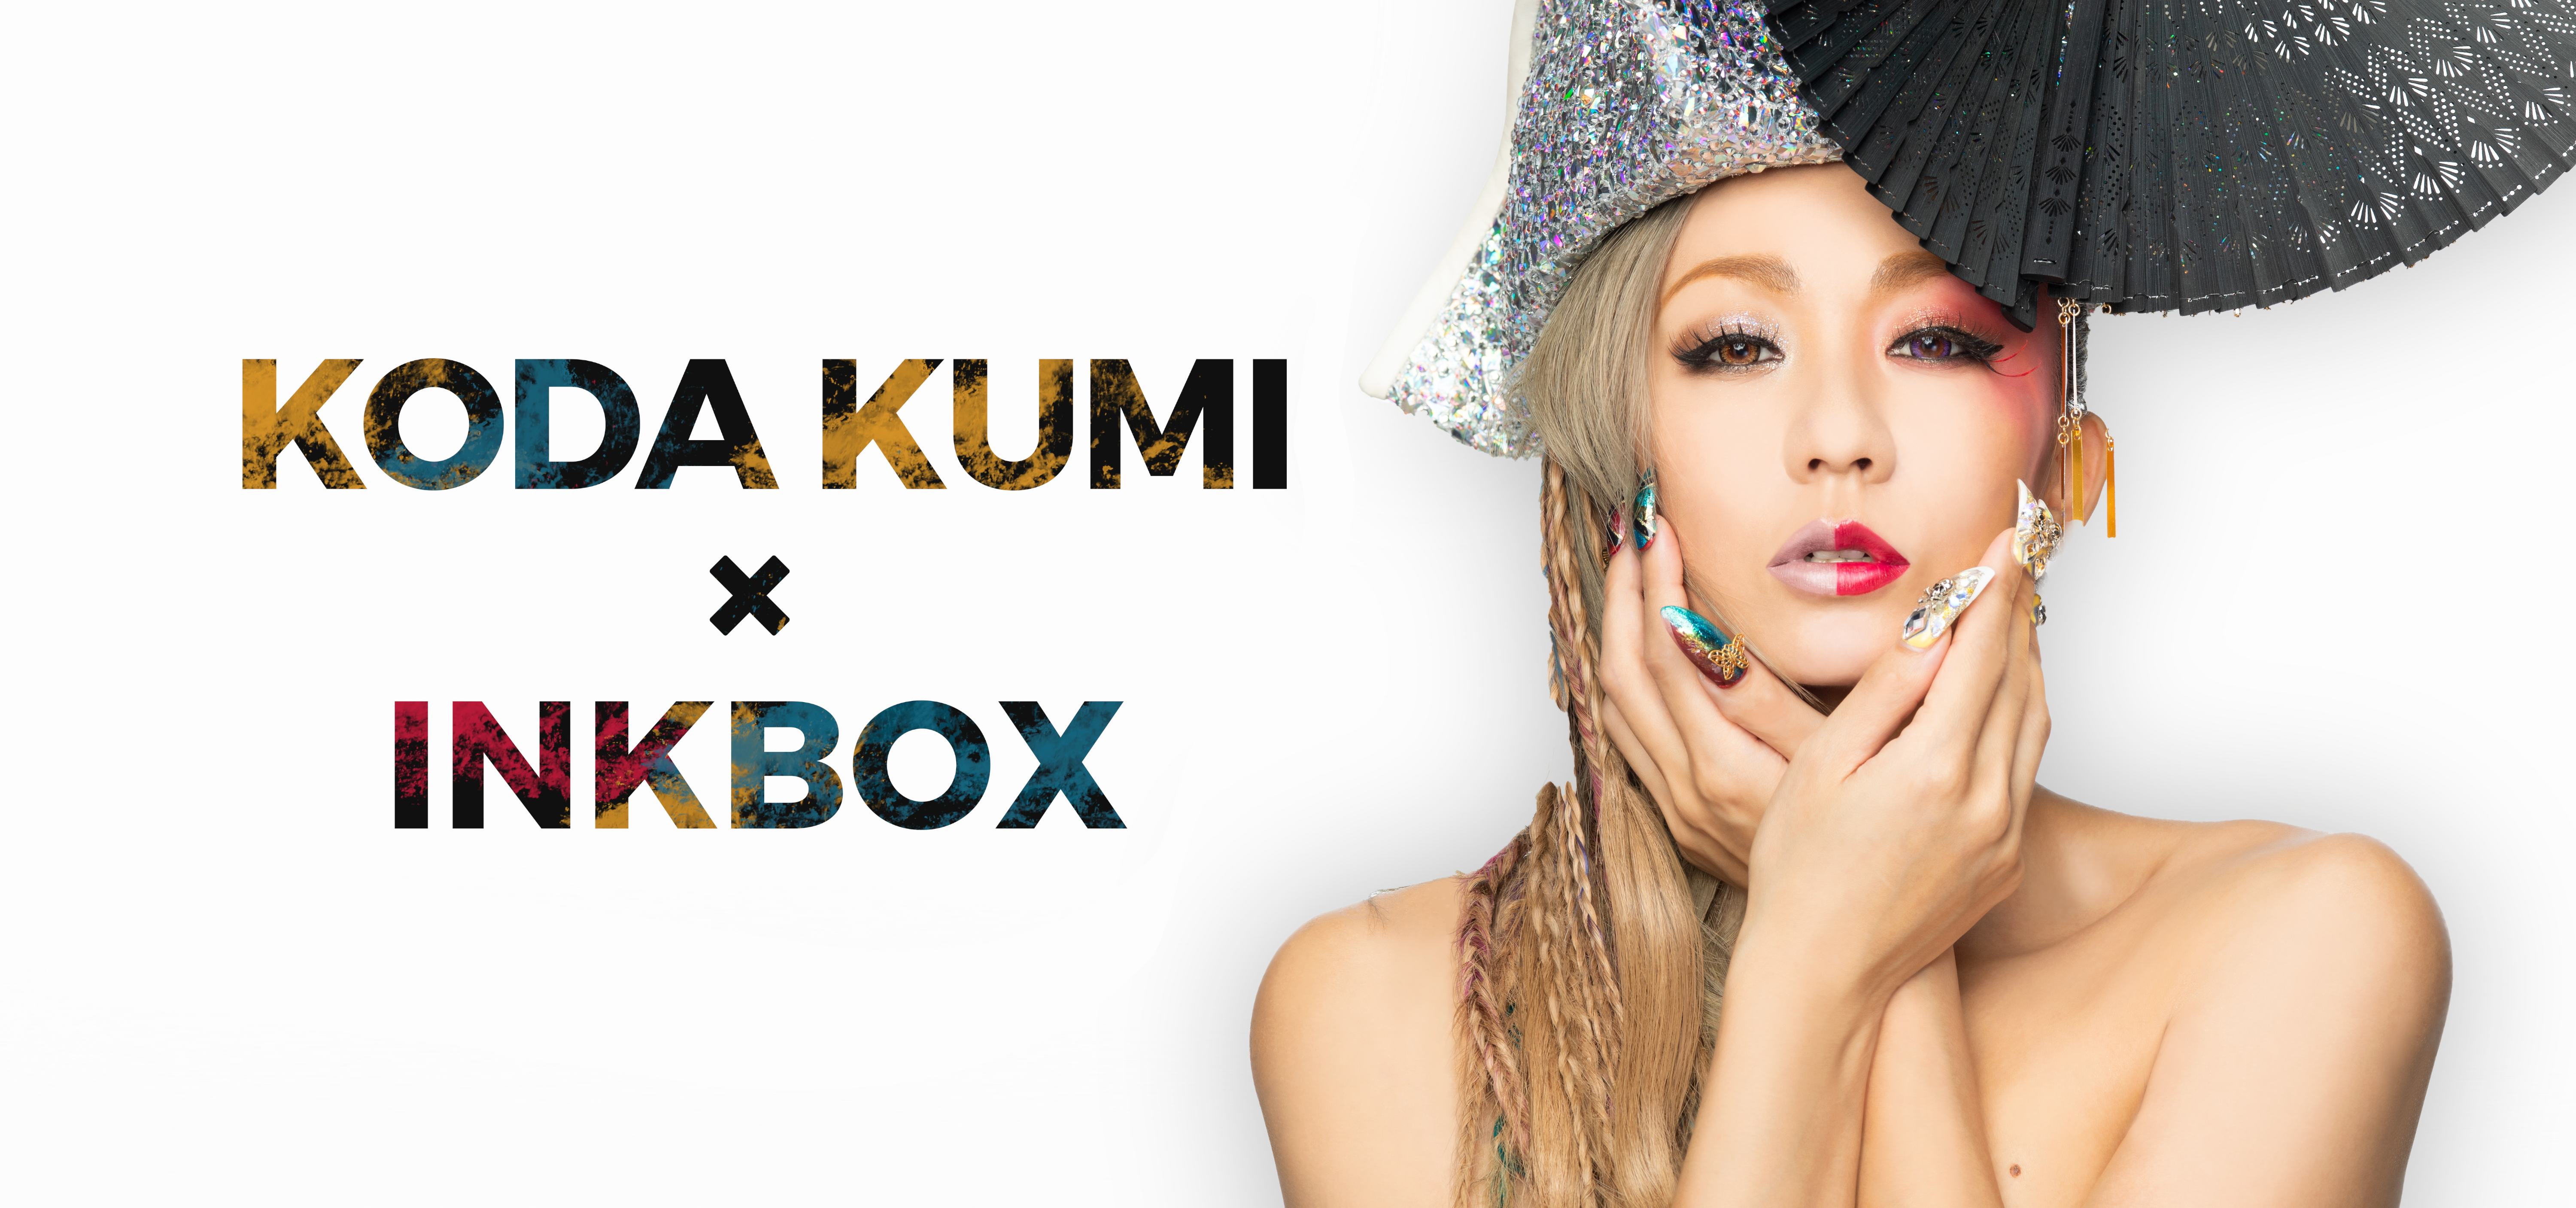 Koda Kumi Inkbox 倖田來未がデザインしたコレクションが限定発売決定 Inkbox Japan